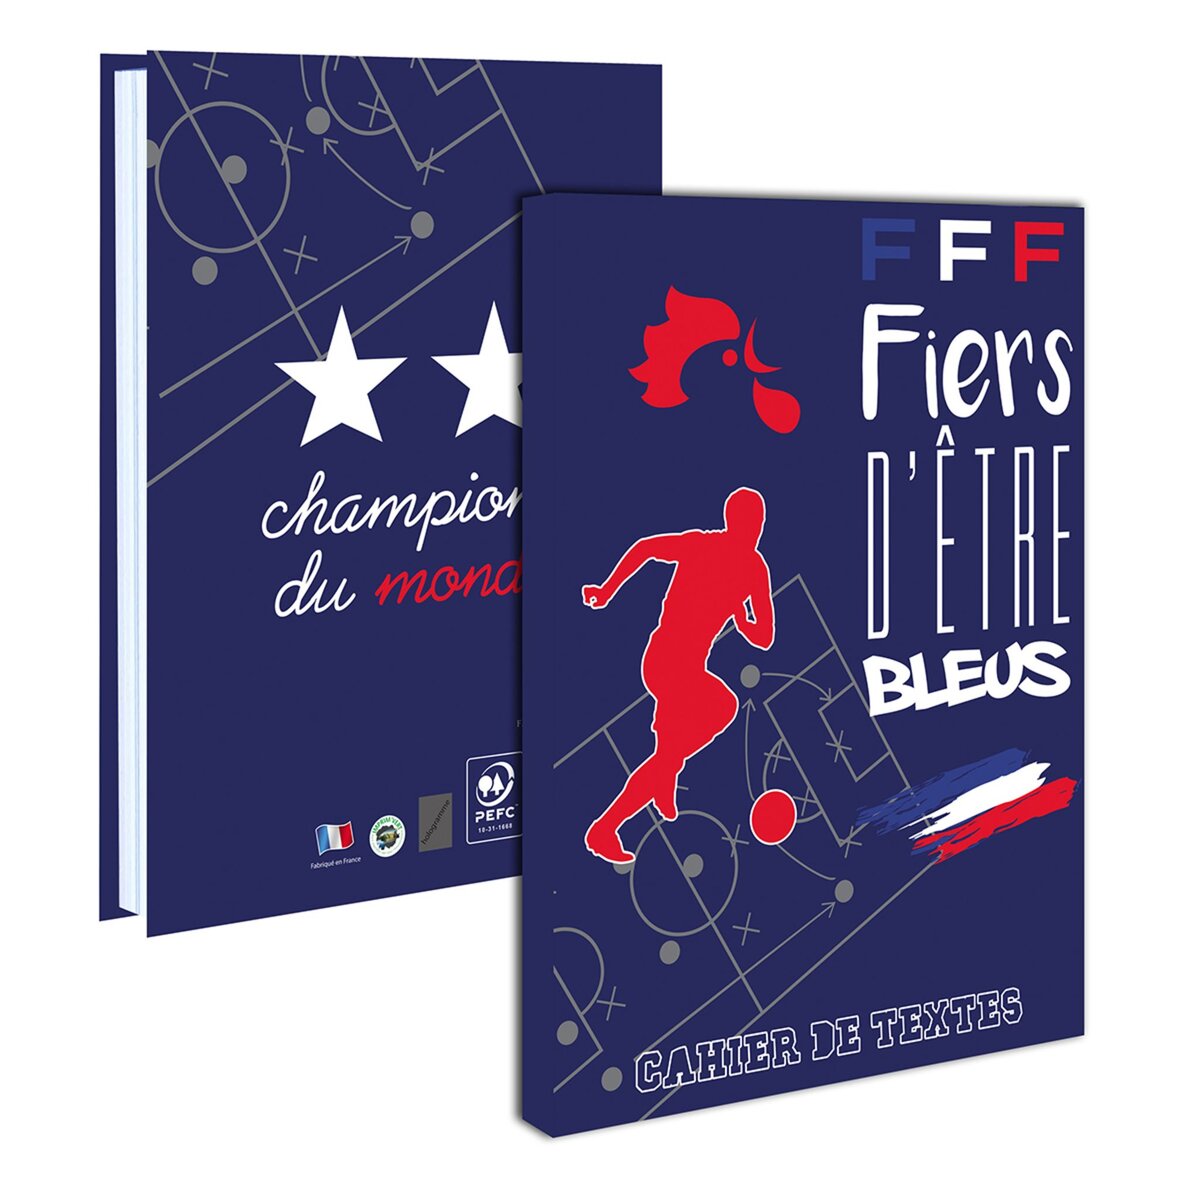 Cahier de texte garçon 15,5x21,5cm couverture carton souple FFF fiers d'être bleus bleu, blanc et rouge